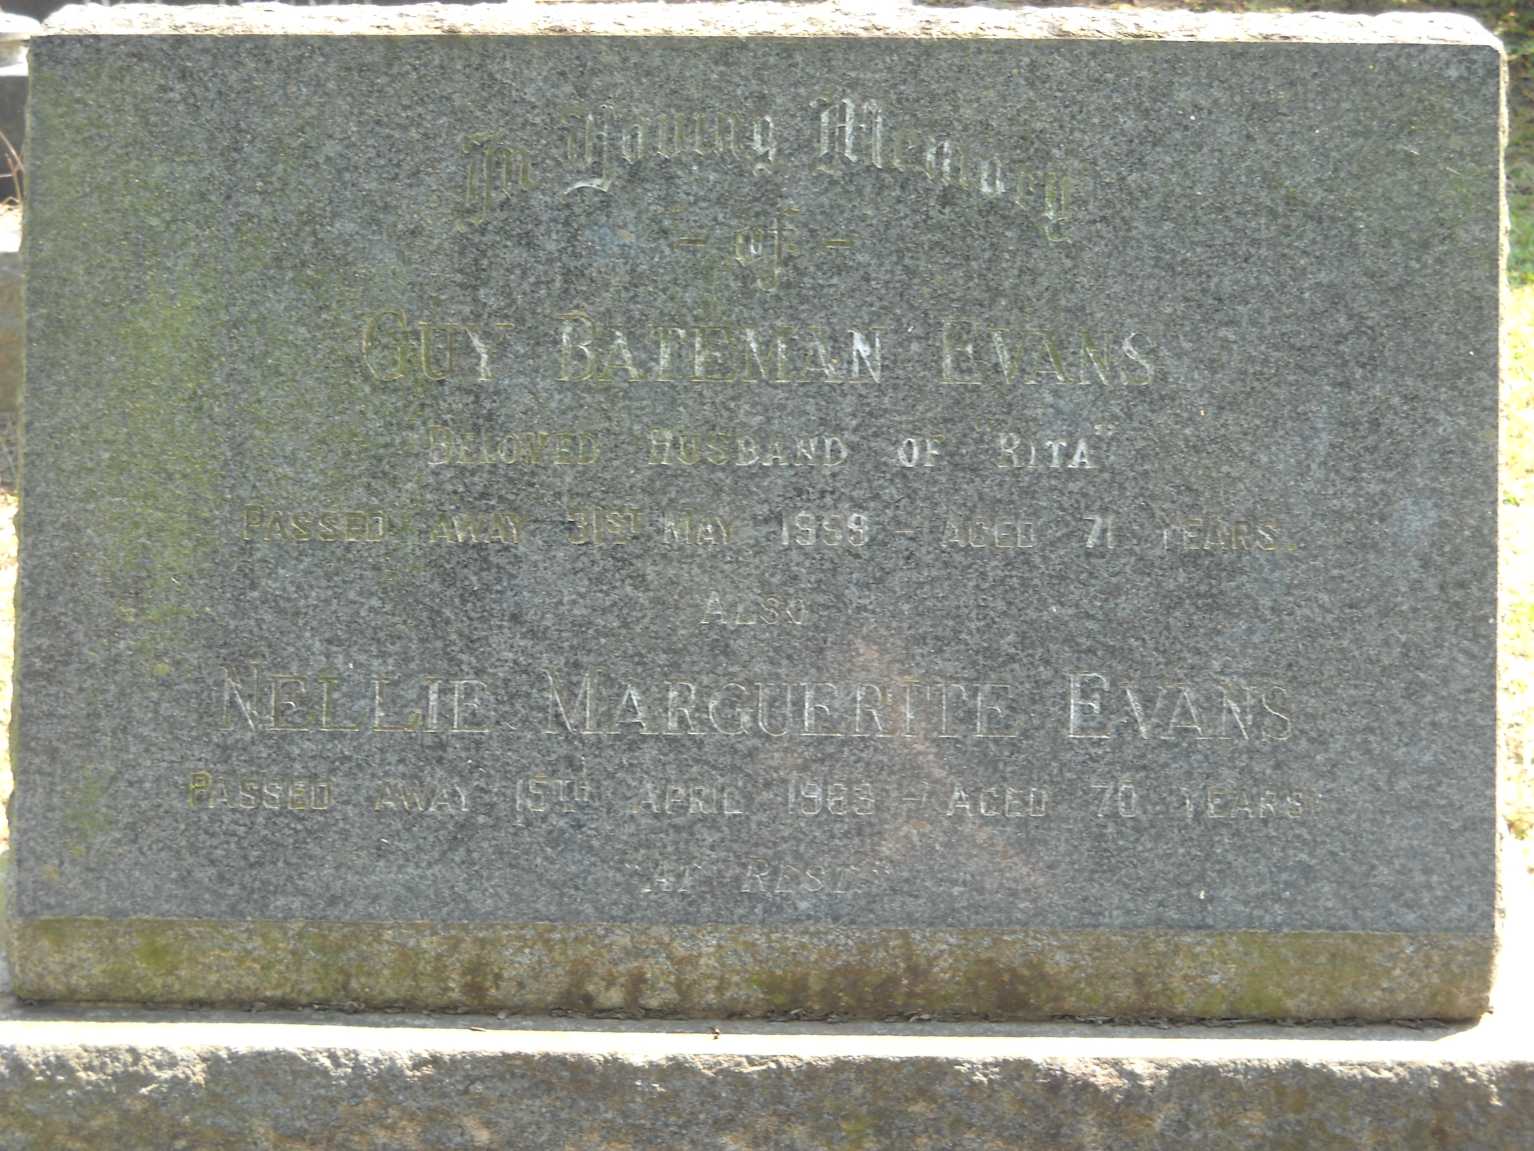 EVANS Guy, BATEMAN -1959 & Nellie Marguerite -1963